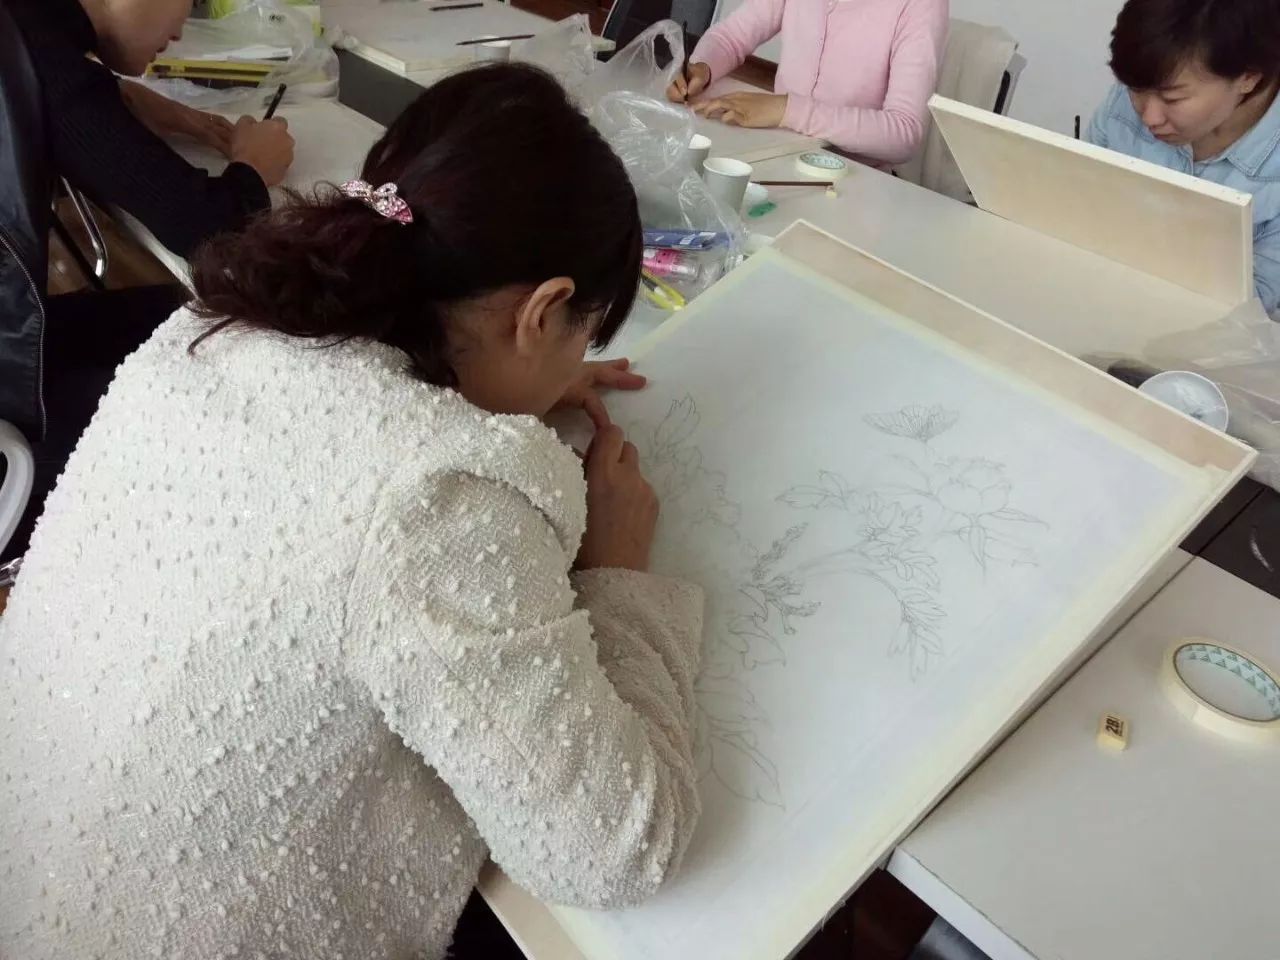 莲姐姐学堂:工笔画课程及曼陀罗绘画课程精彩掠影